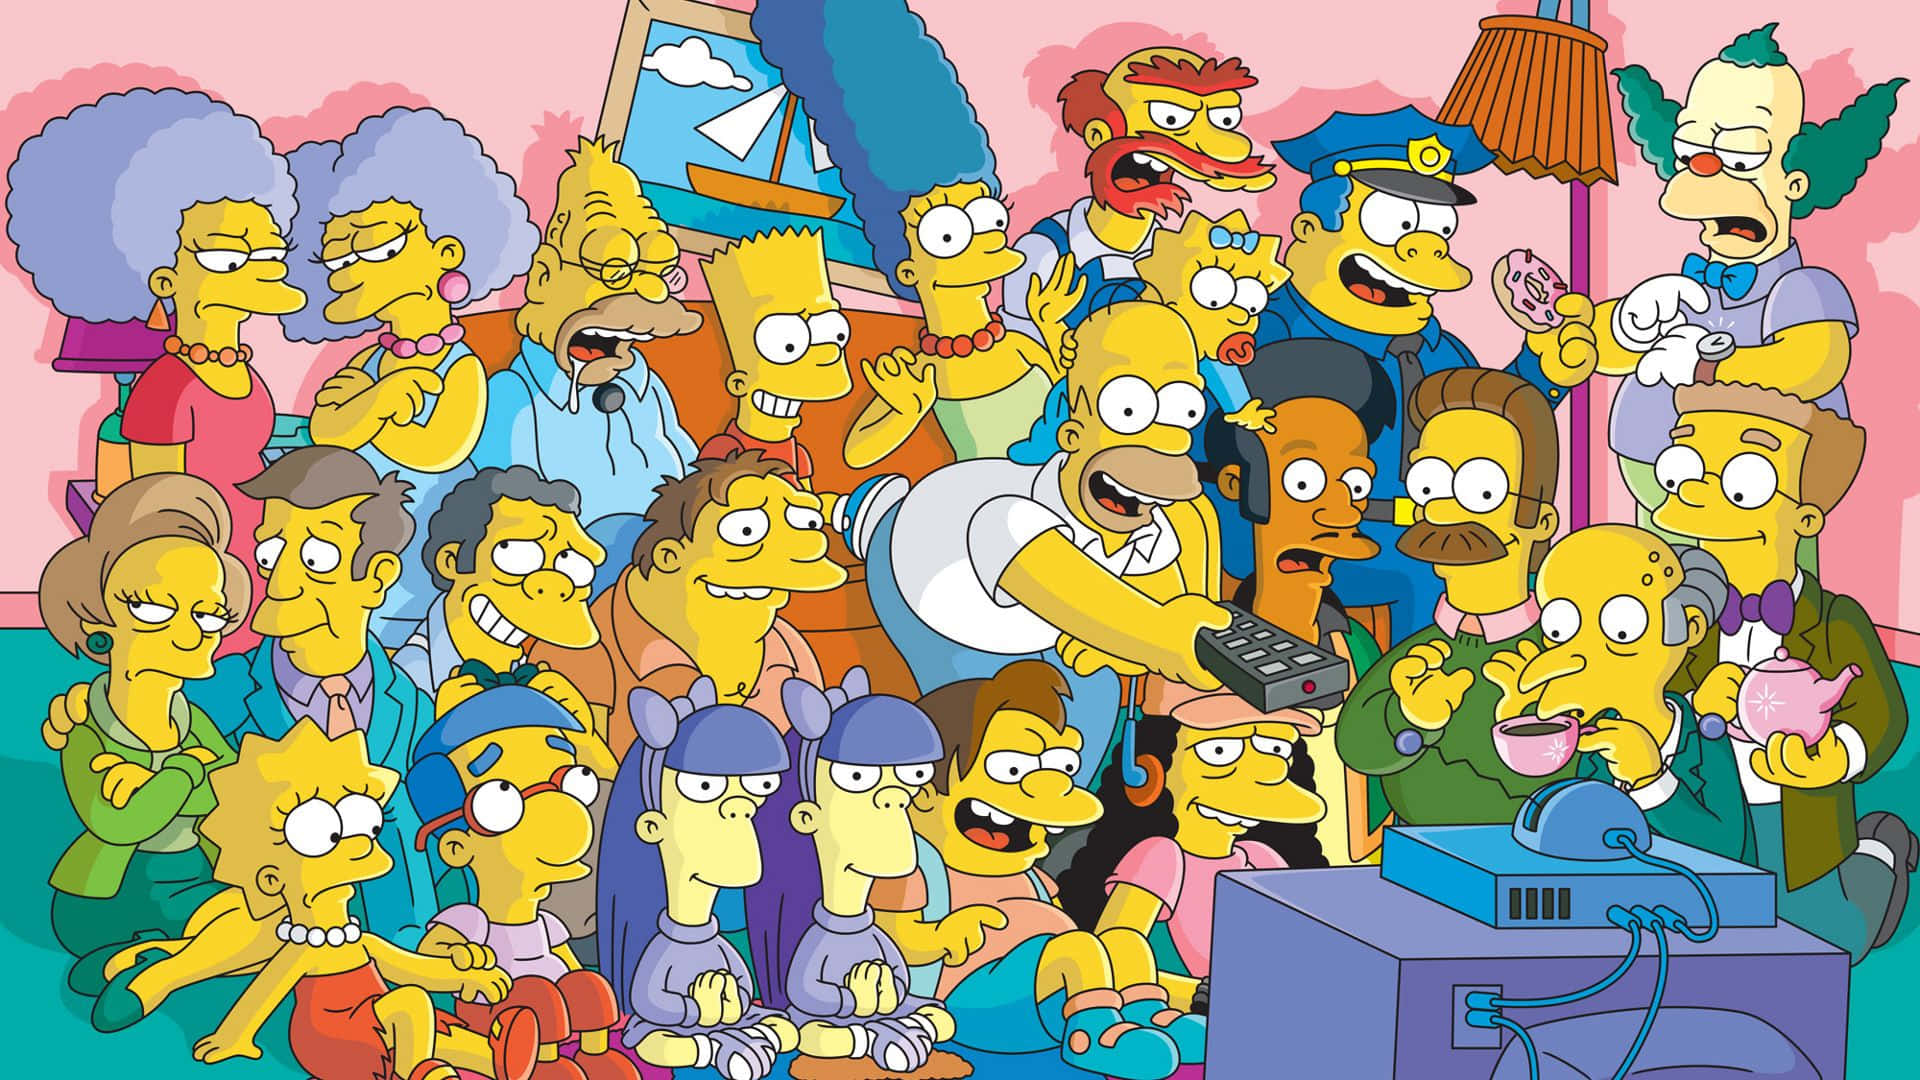 Homersimpson Y Bart Simpson Disfrutando De Su Actividad Favorita En La Computadora. Fondo de pantalla